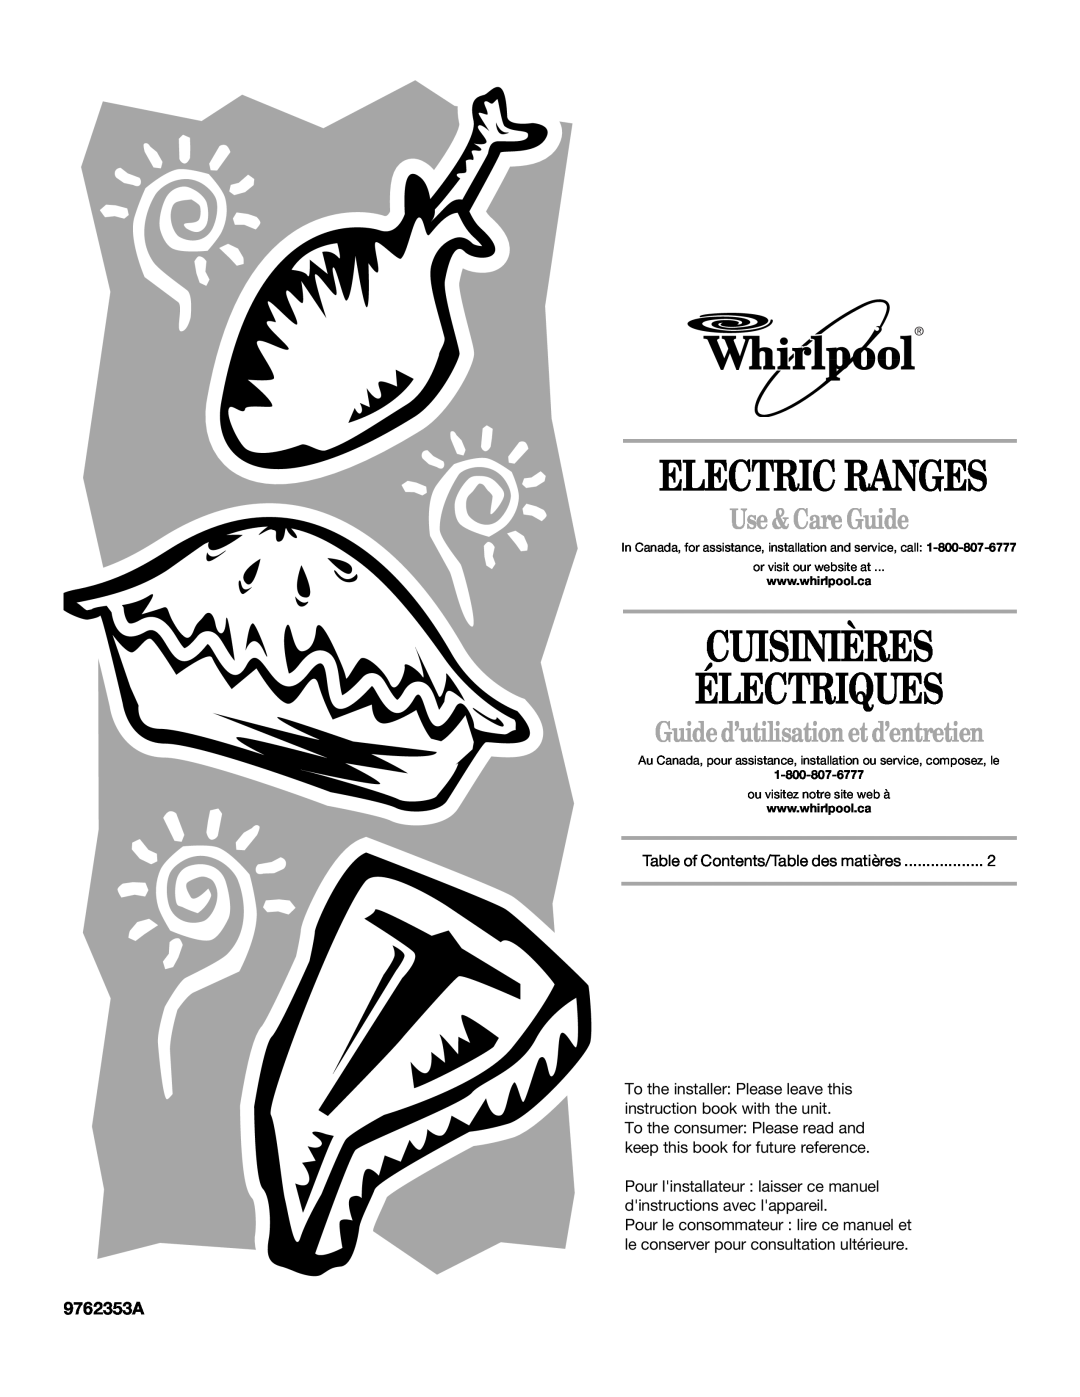 Whirlpool GERC4110PB2 manual 9762353A, Electric Ranges, Cuisinières Électriques, Use & Care Guide 